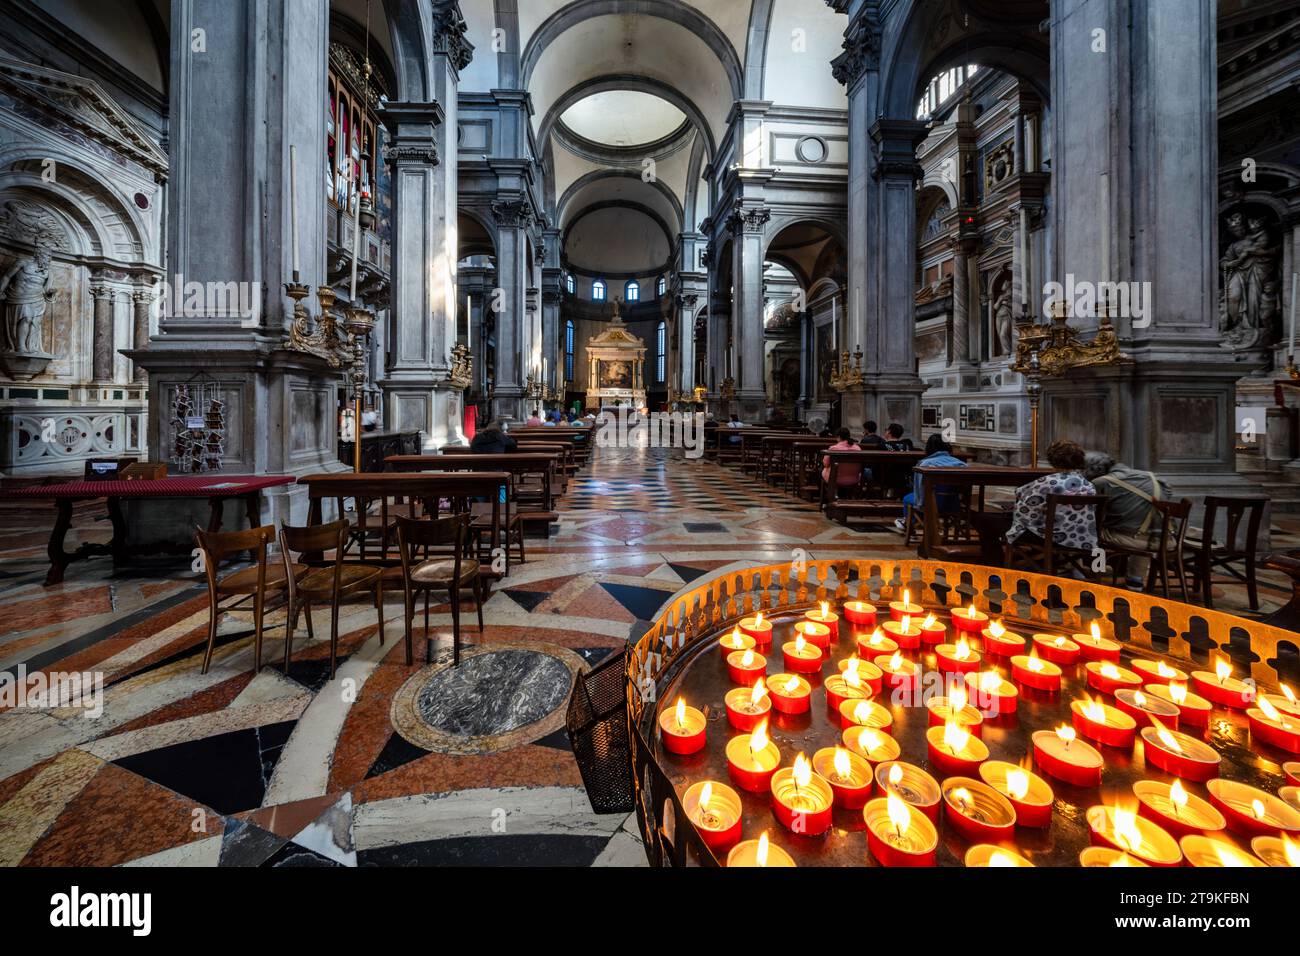 Intérieur d'une église à Venise, Italie Banque D'Images